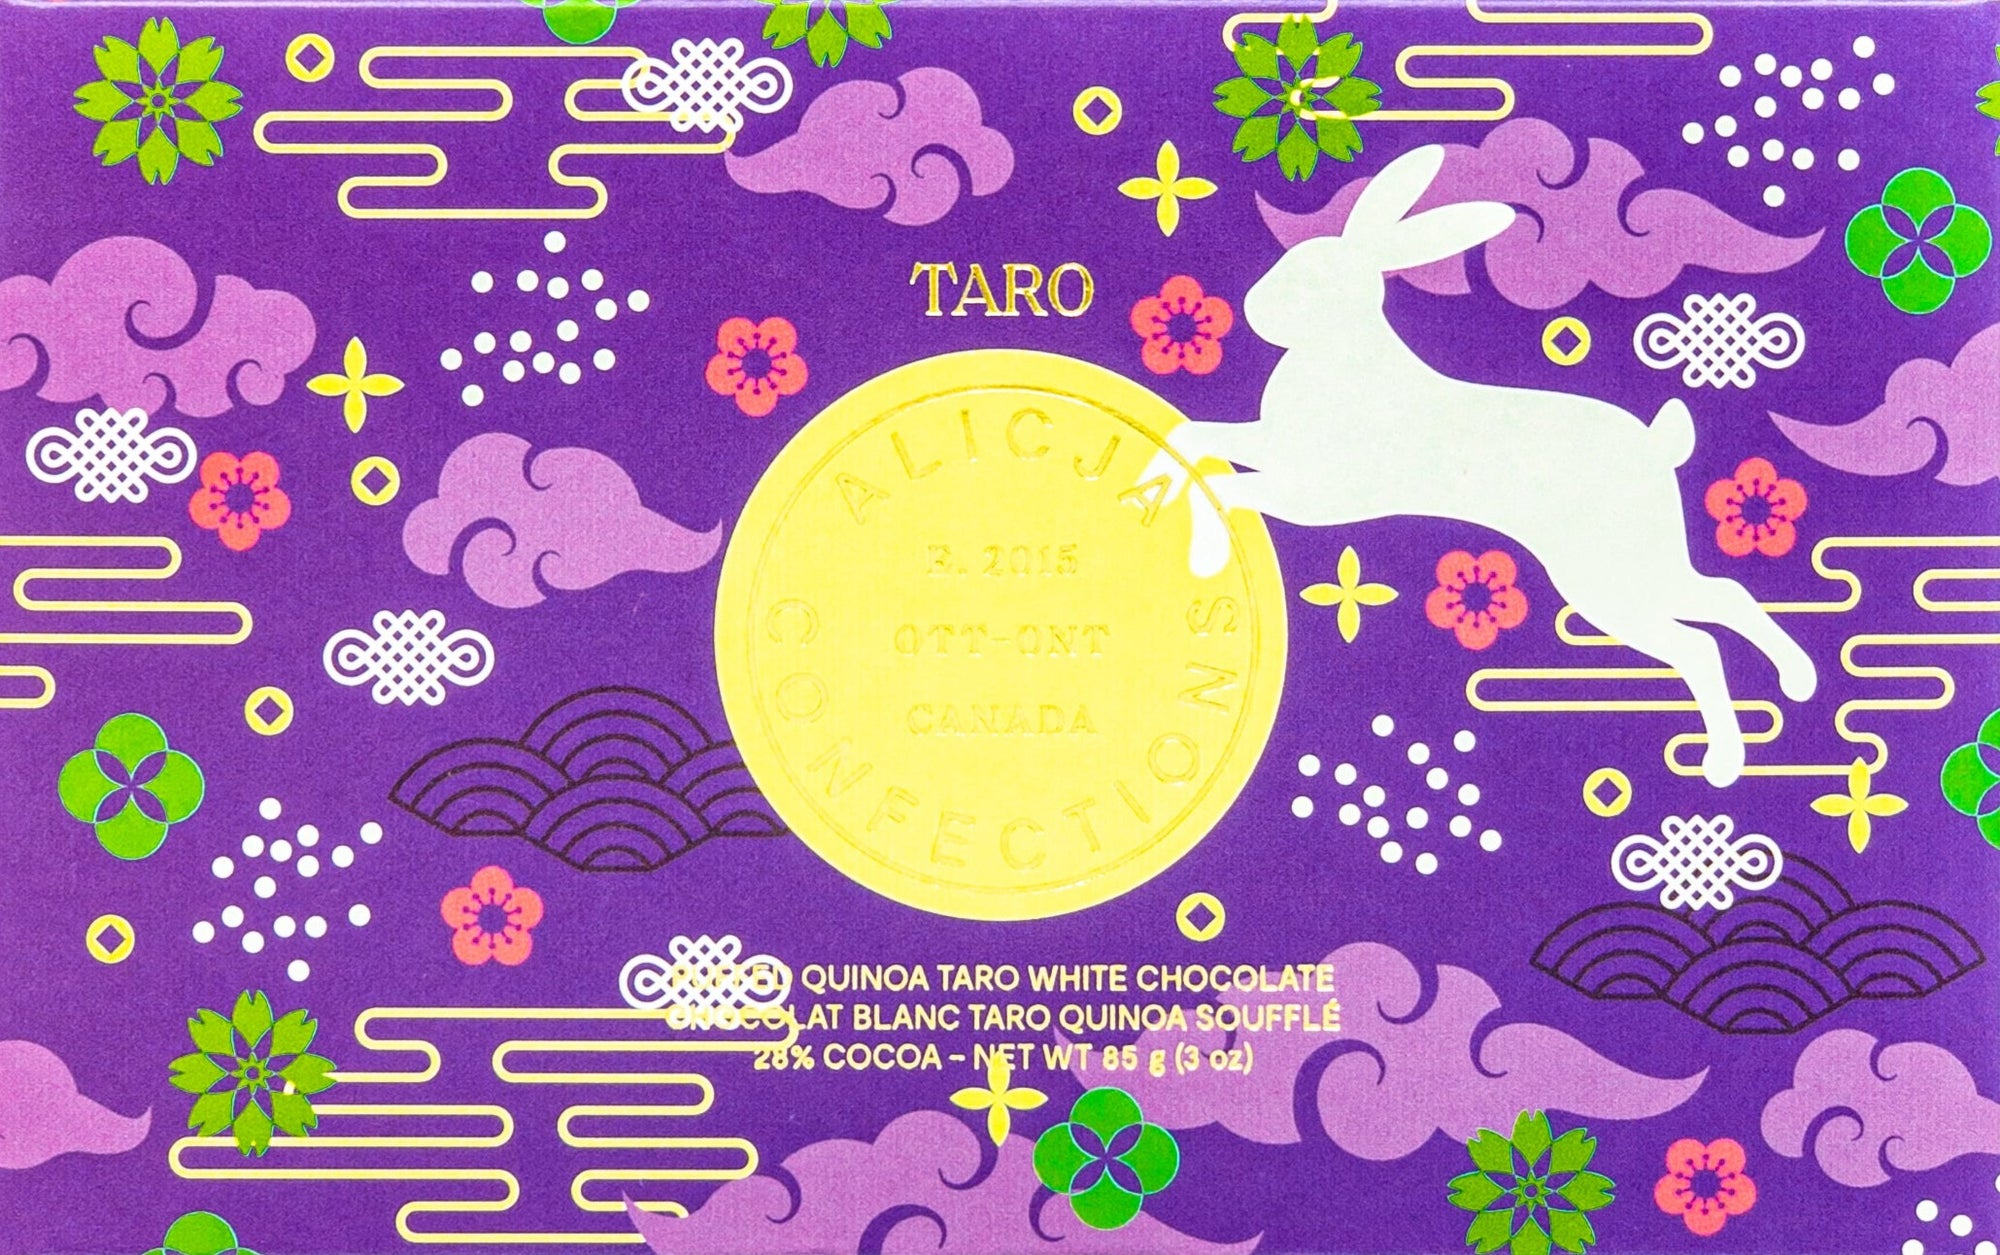 Taro • Taro Puffed Quinoa 28% White Chocolate